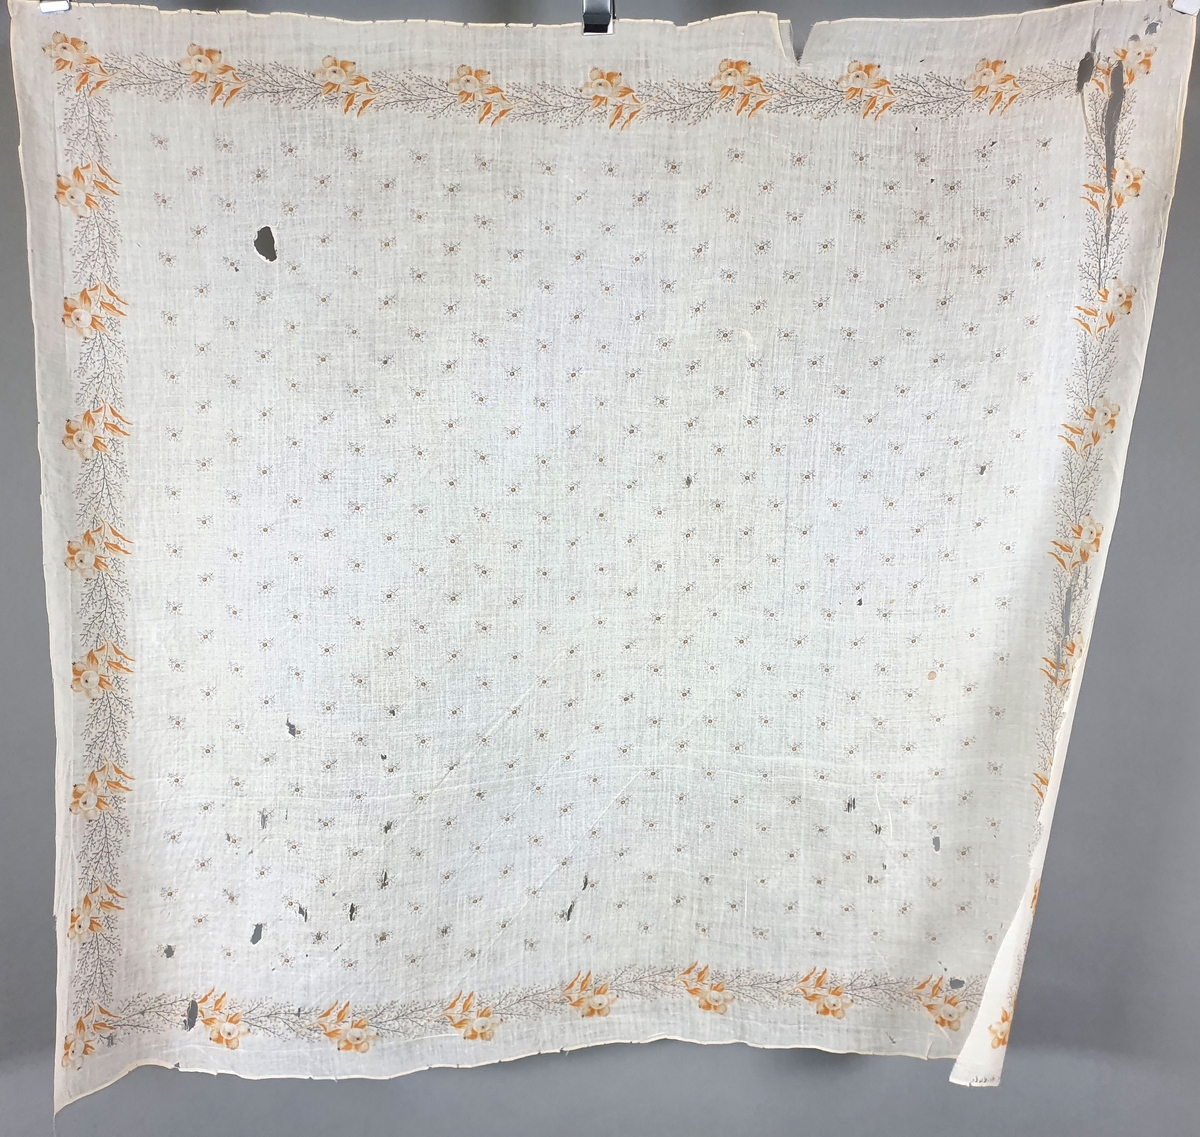 Fire stivede sjal med ulike trykkede mønstre, merket Heidal. Tørklene er i dårlig stand, med hull og revner.